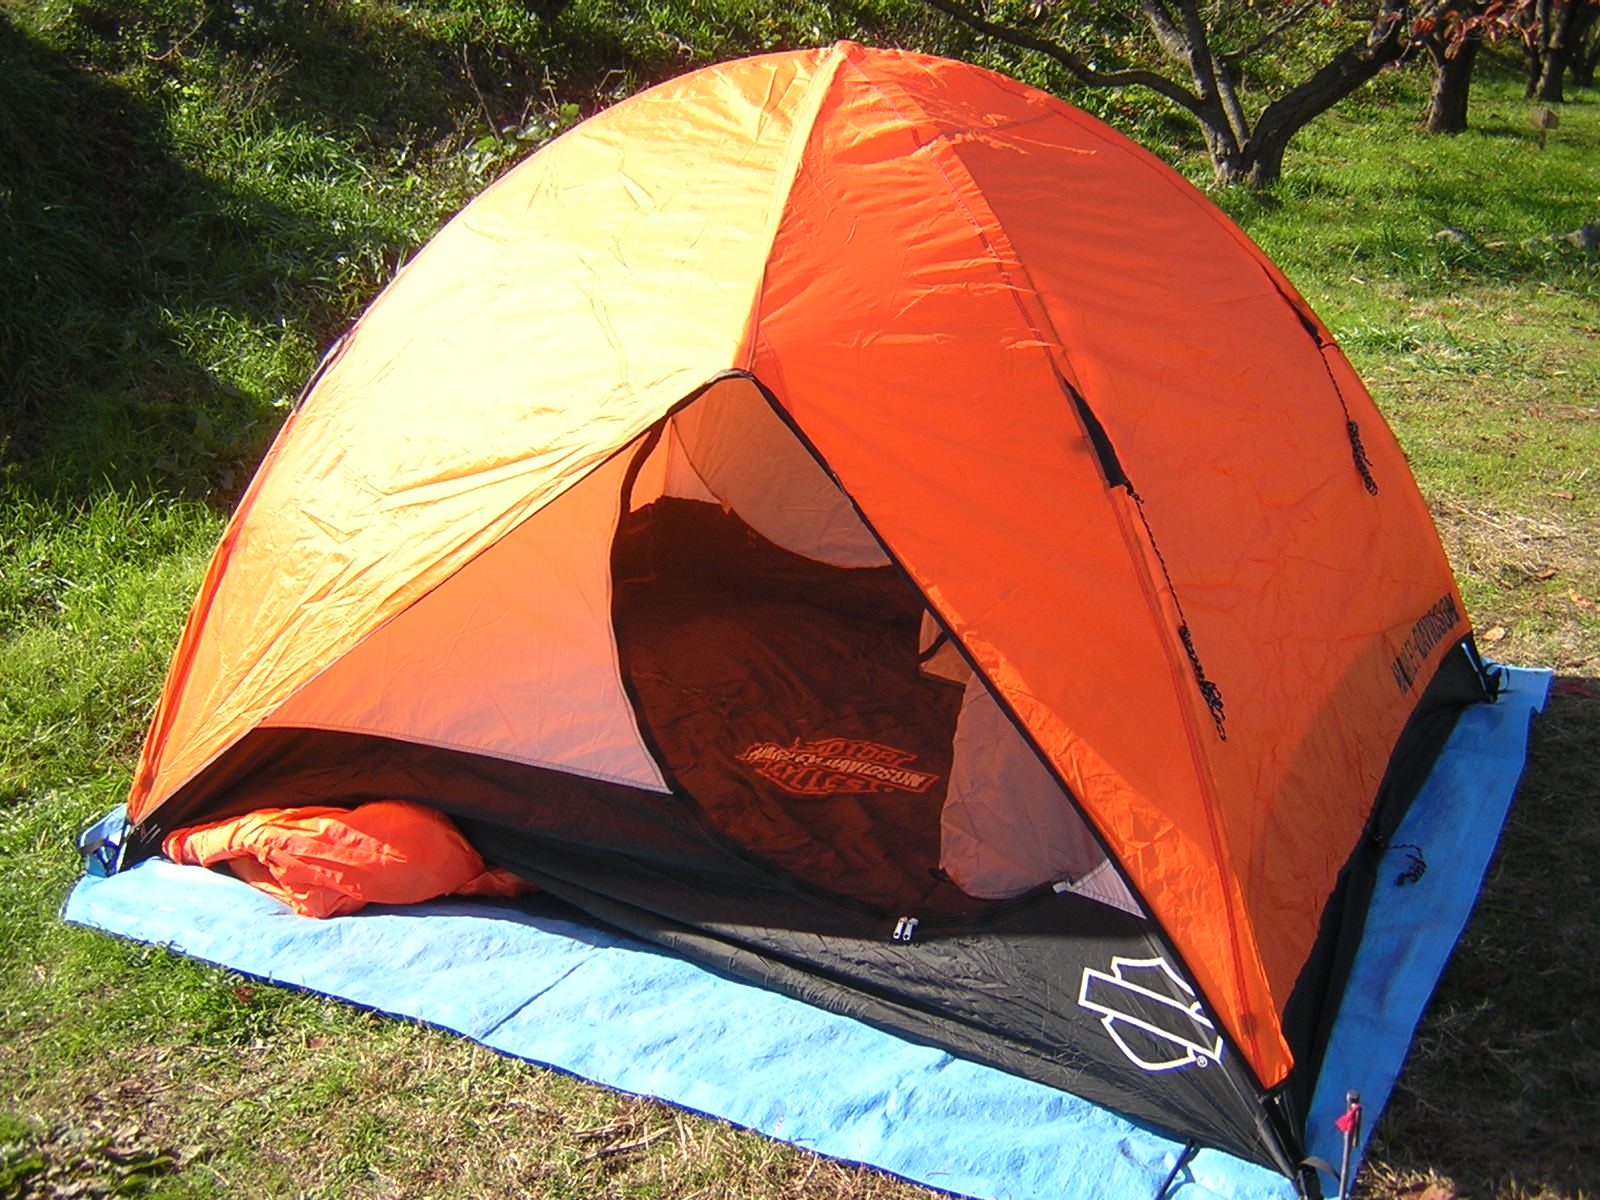 Harley Davidson Touring Tent | キャンプ用品・資料倉庫からのつぶやき